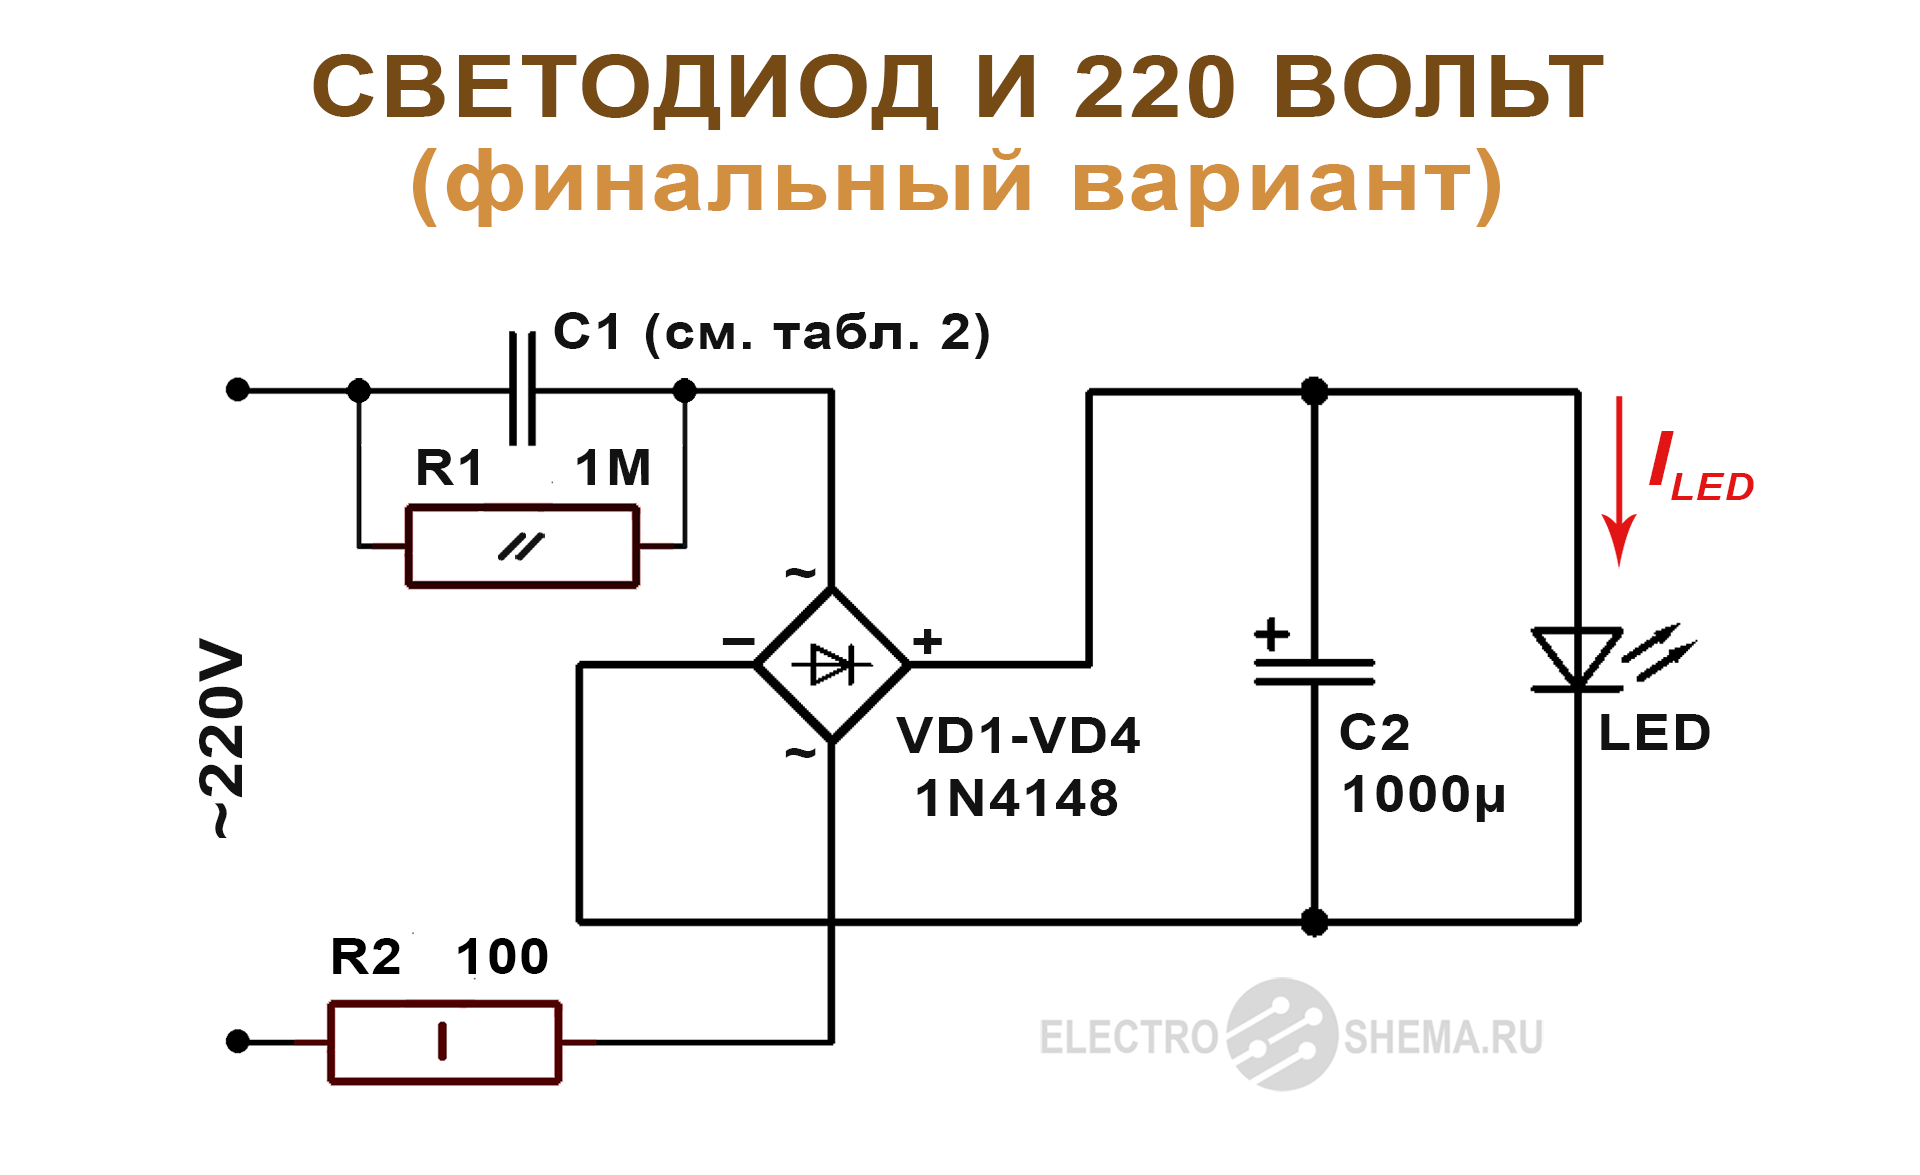 Как подключить светодиодный светильник к 220 в, схема подключения к сети, как правильно подсоединить лед-лампу на 12 вольт